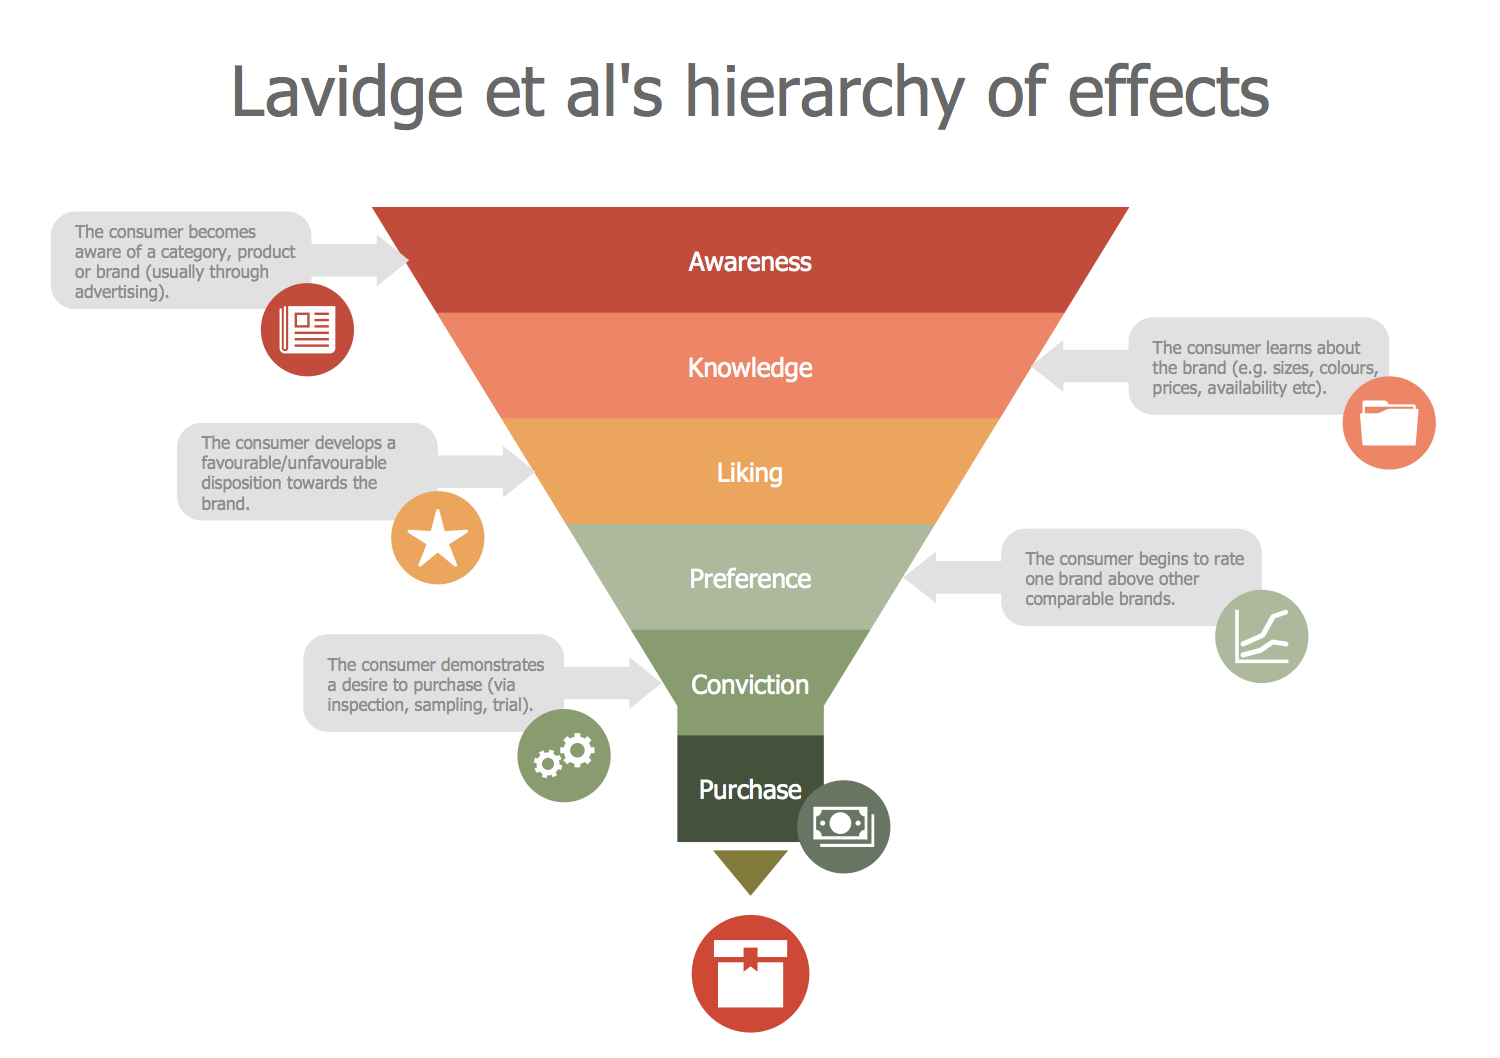 Lavidge et al's Hierarchy of Effects